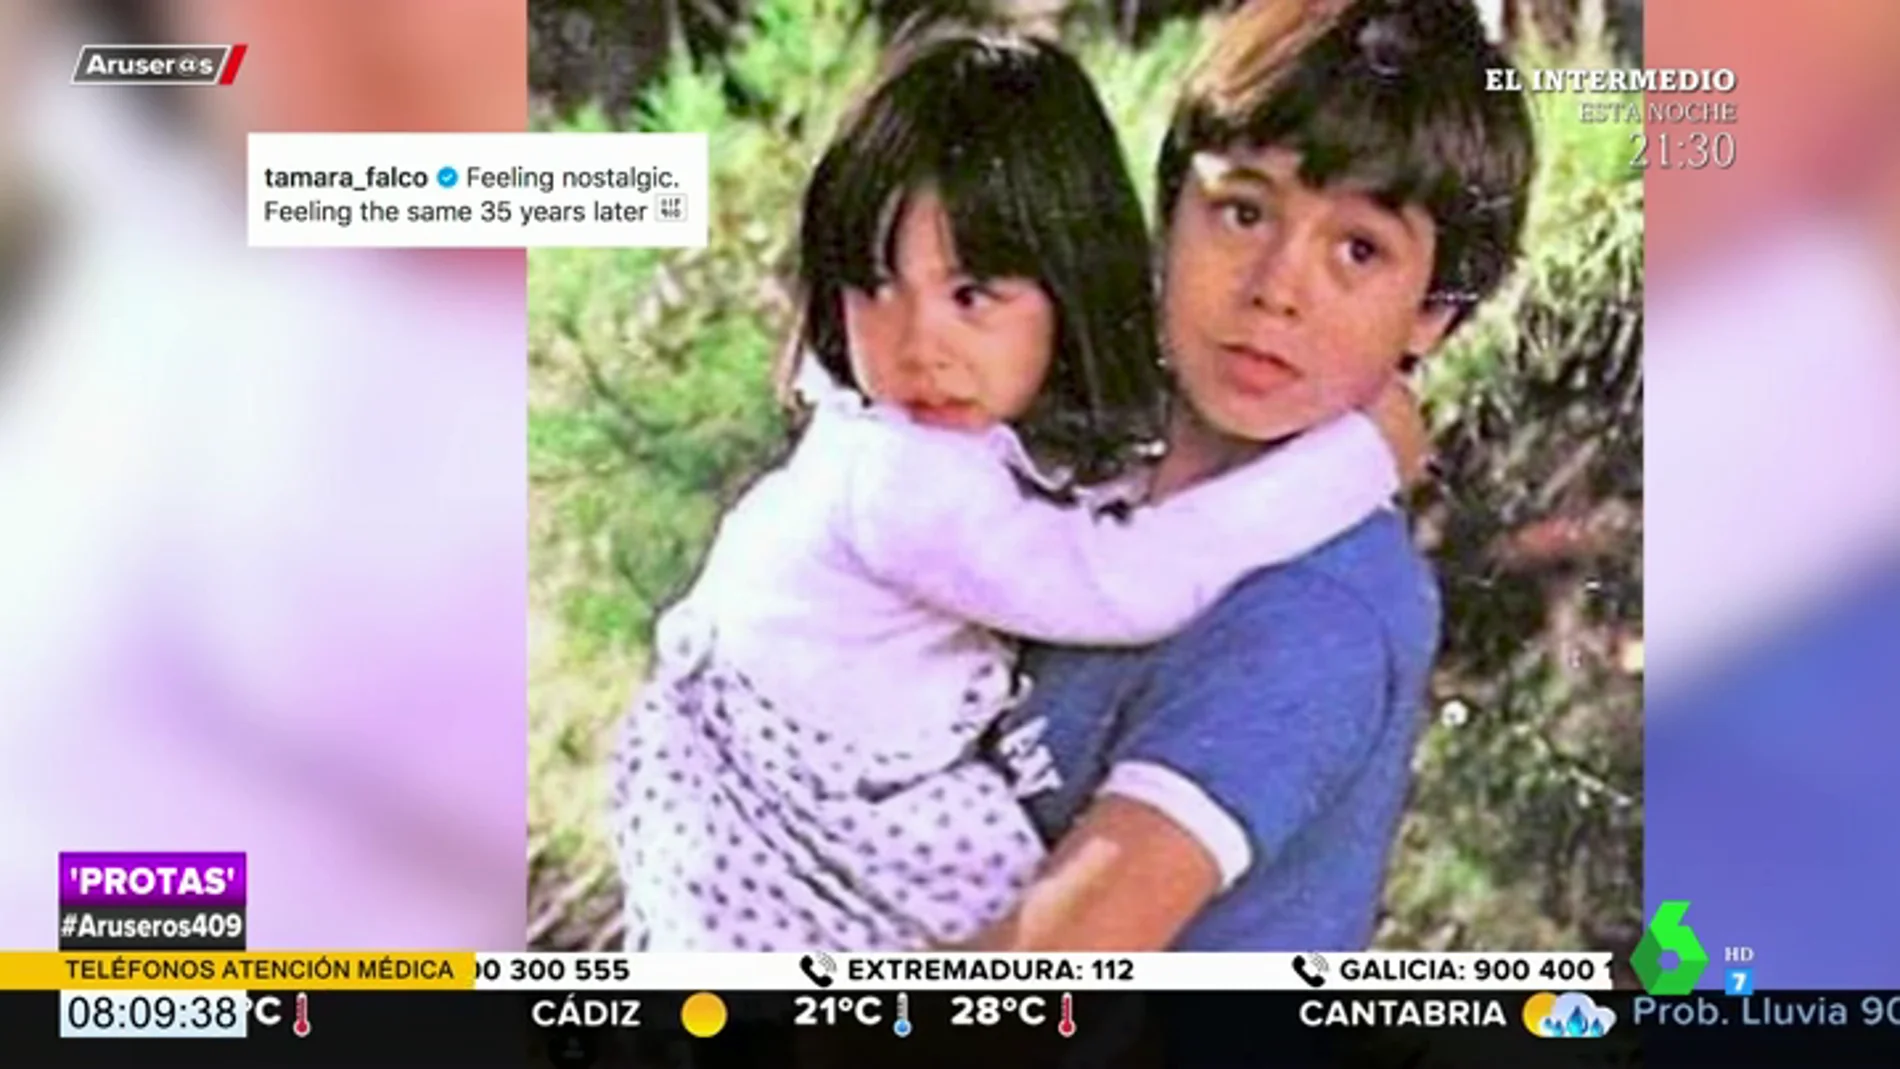 La tierna fotografía de la infancia de Tamara Falcó y Enrique Iglesias de hace 35 años